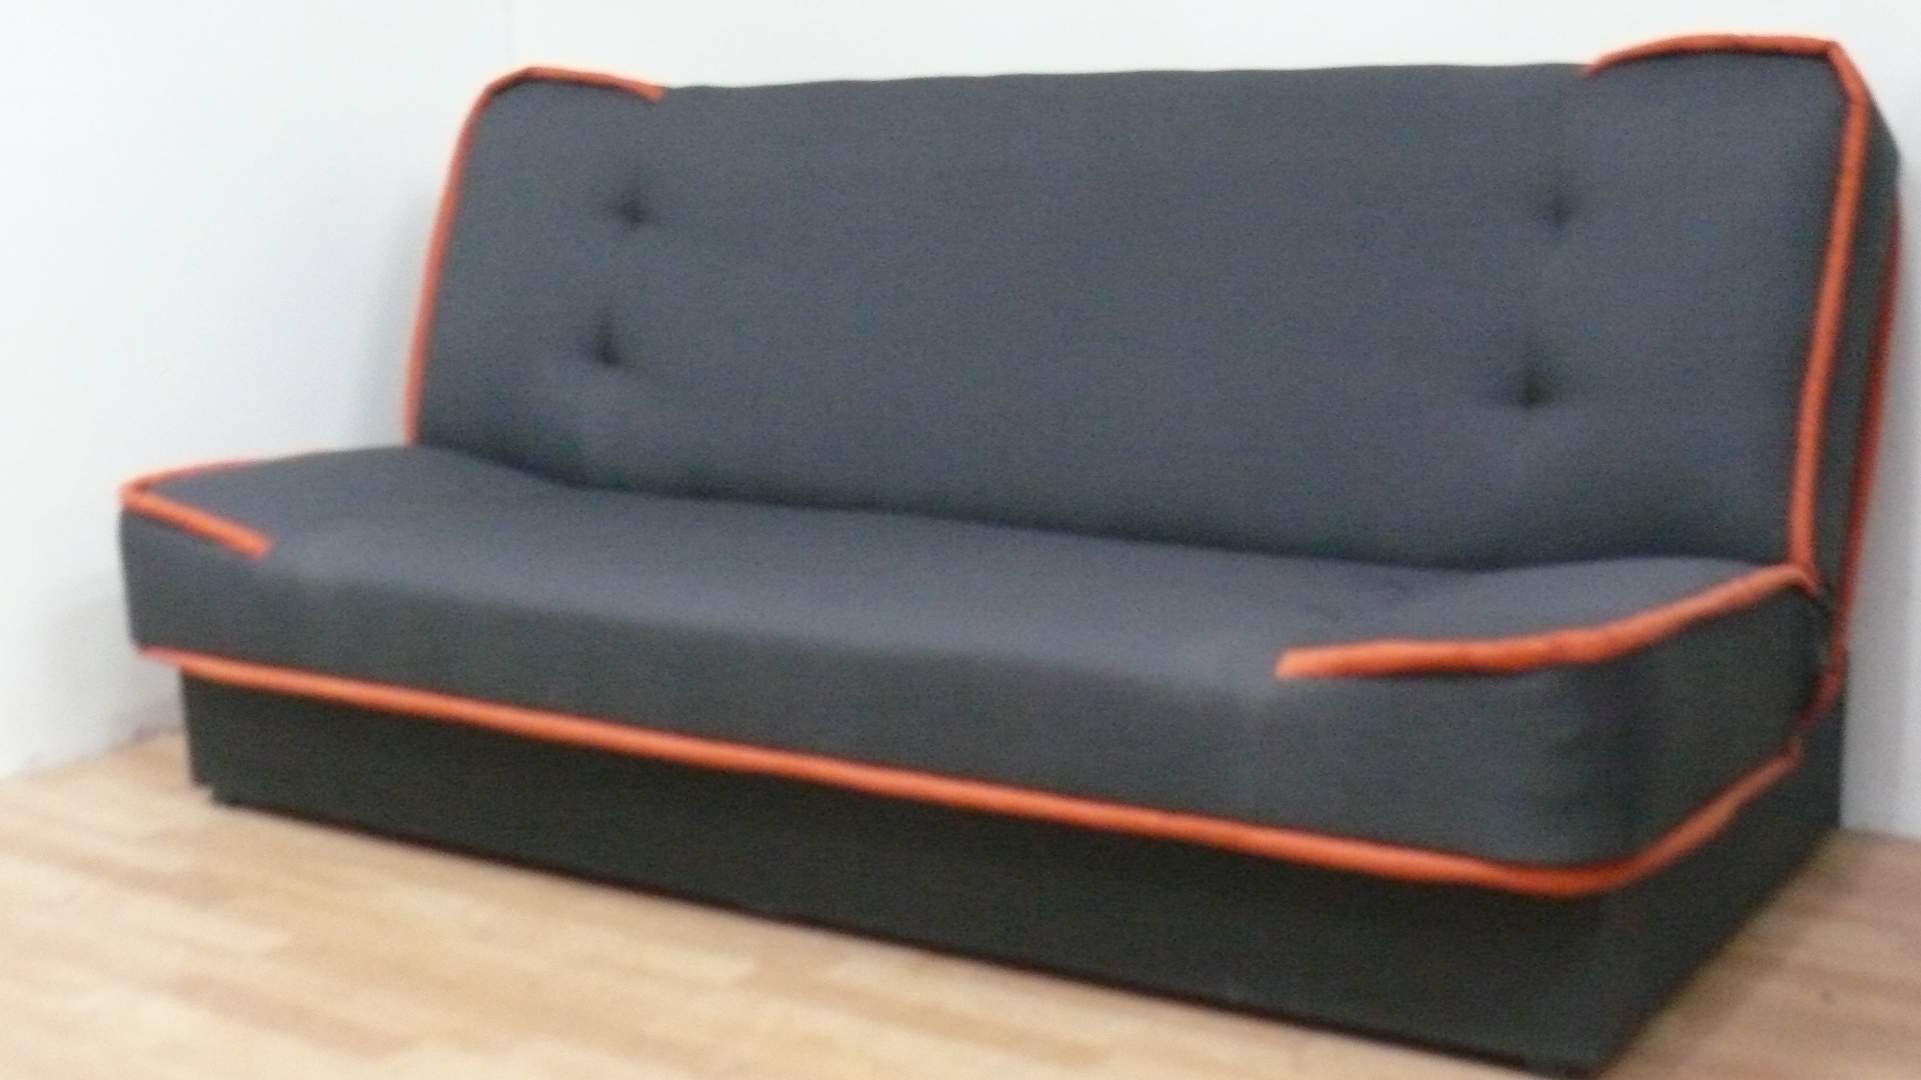 Nowa sofa w 24godz wersalka kanapa tapczan łóżko rozkładana do spania